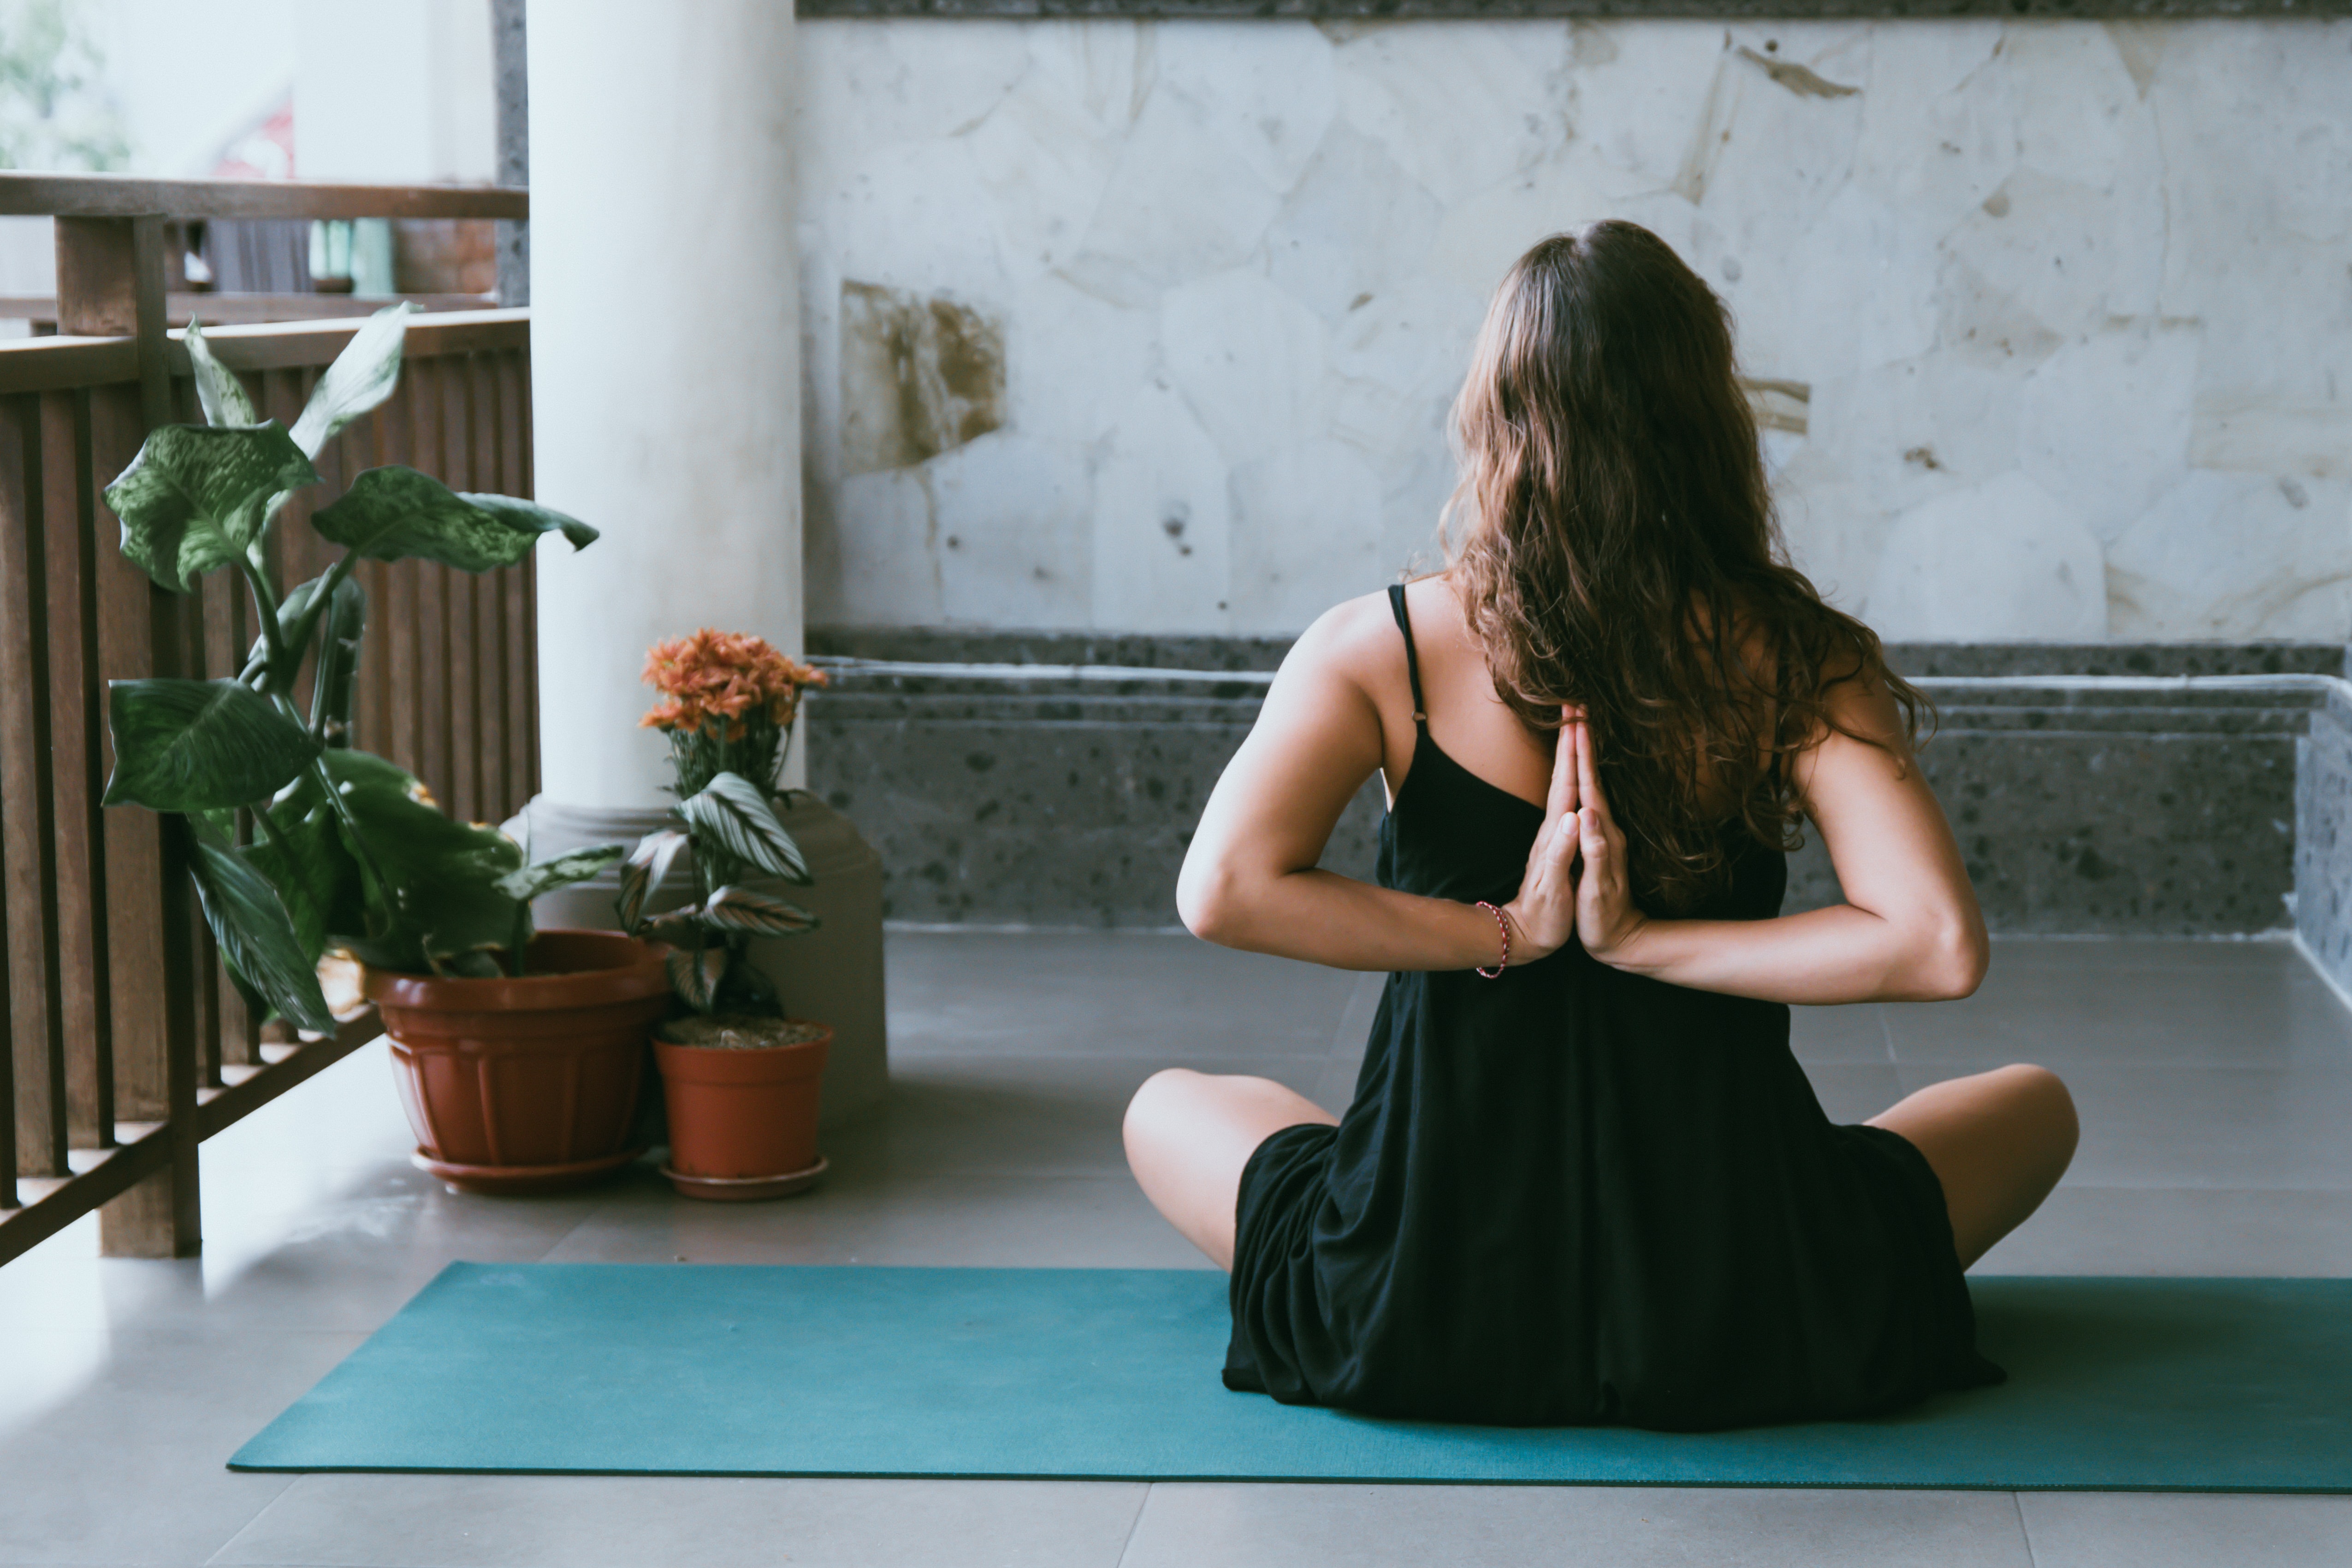 Këto 5 përfitime vërtetojnë pse joga është e rëndësishme për ju